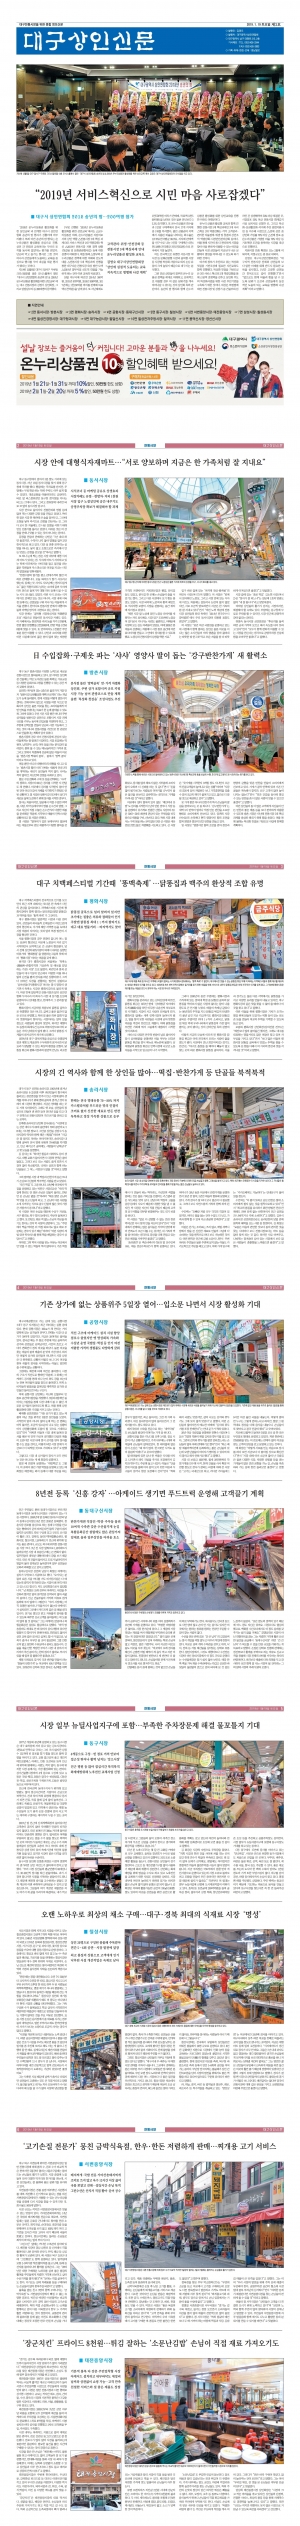 대구상인신문 2018 - 제3호(2019.1.19) 